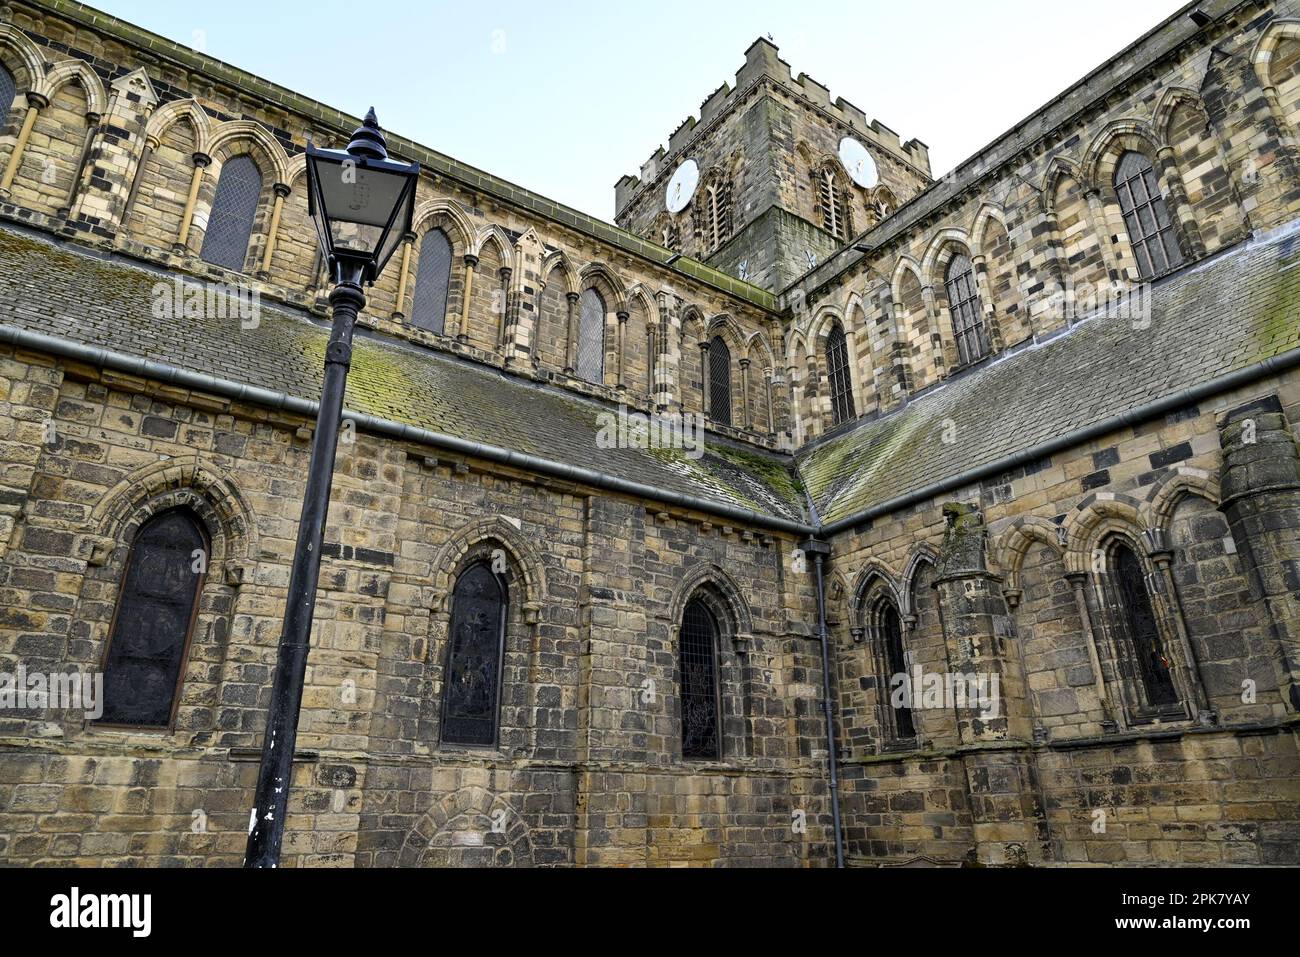 Hexham, Northumberland, Angleterre, Royaume-Uni. Abbaye de Hexham (église du Prieuré Augustinien de St Andrew - c1170-1250 - Norman) Banque D'Images